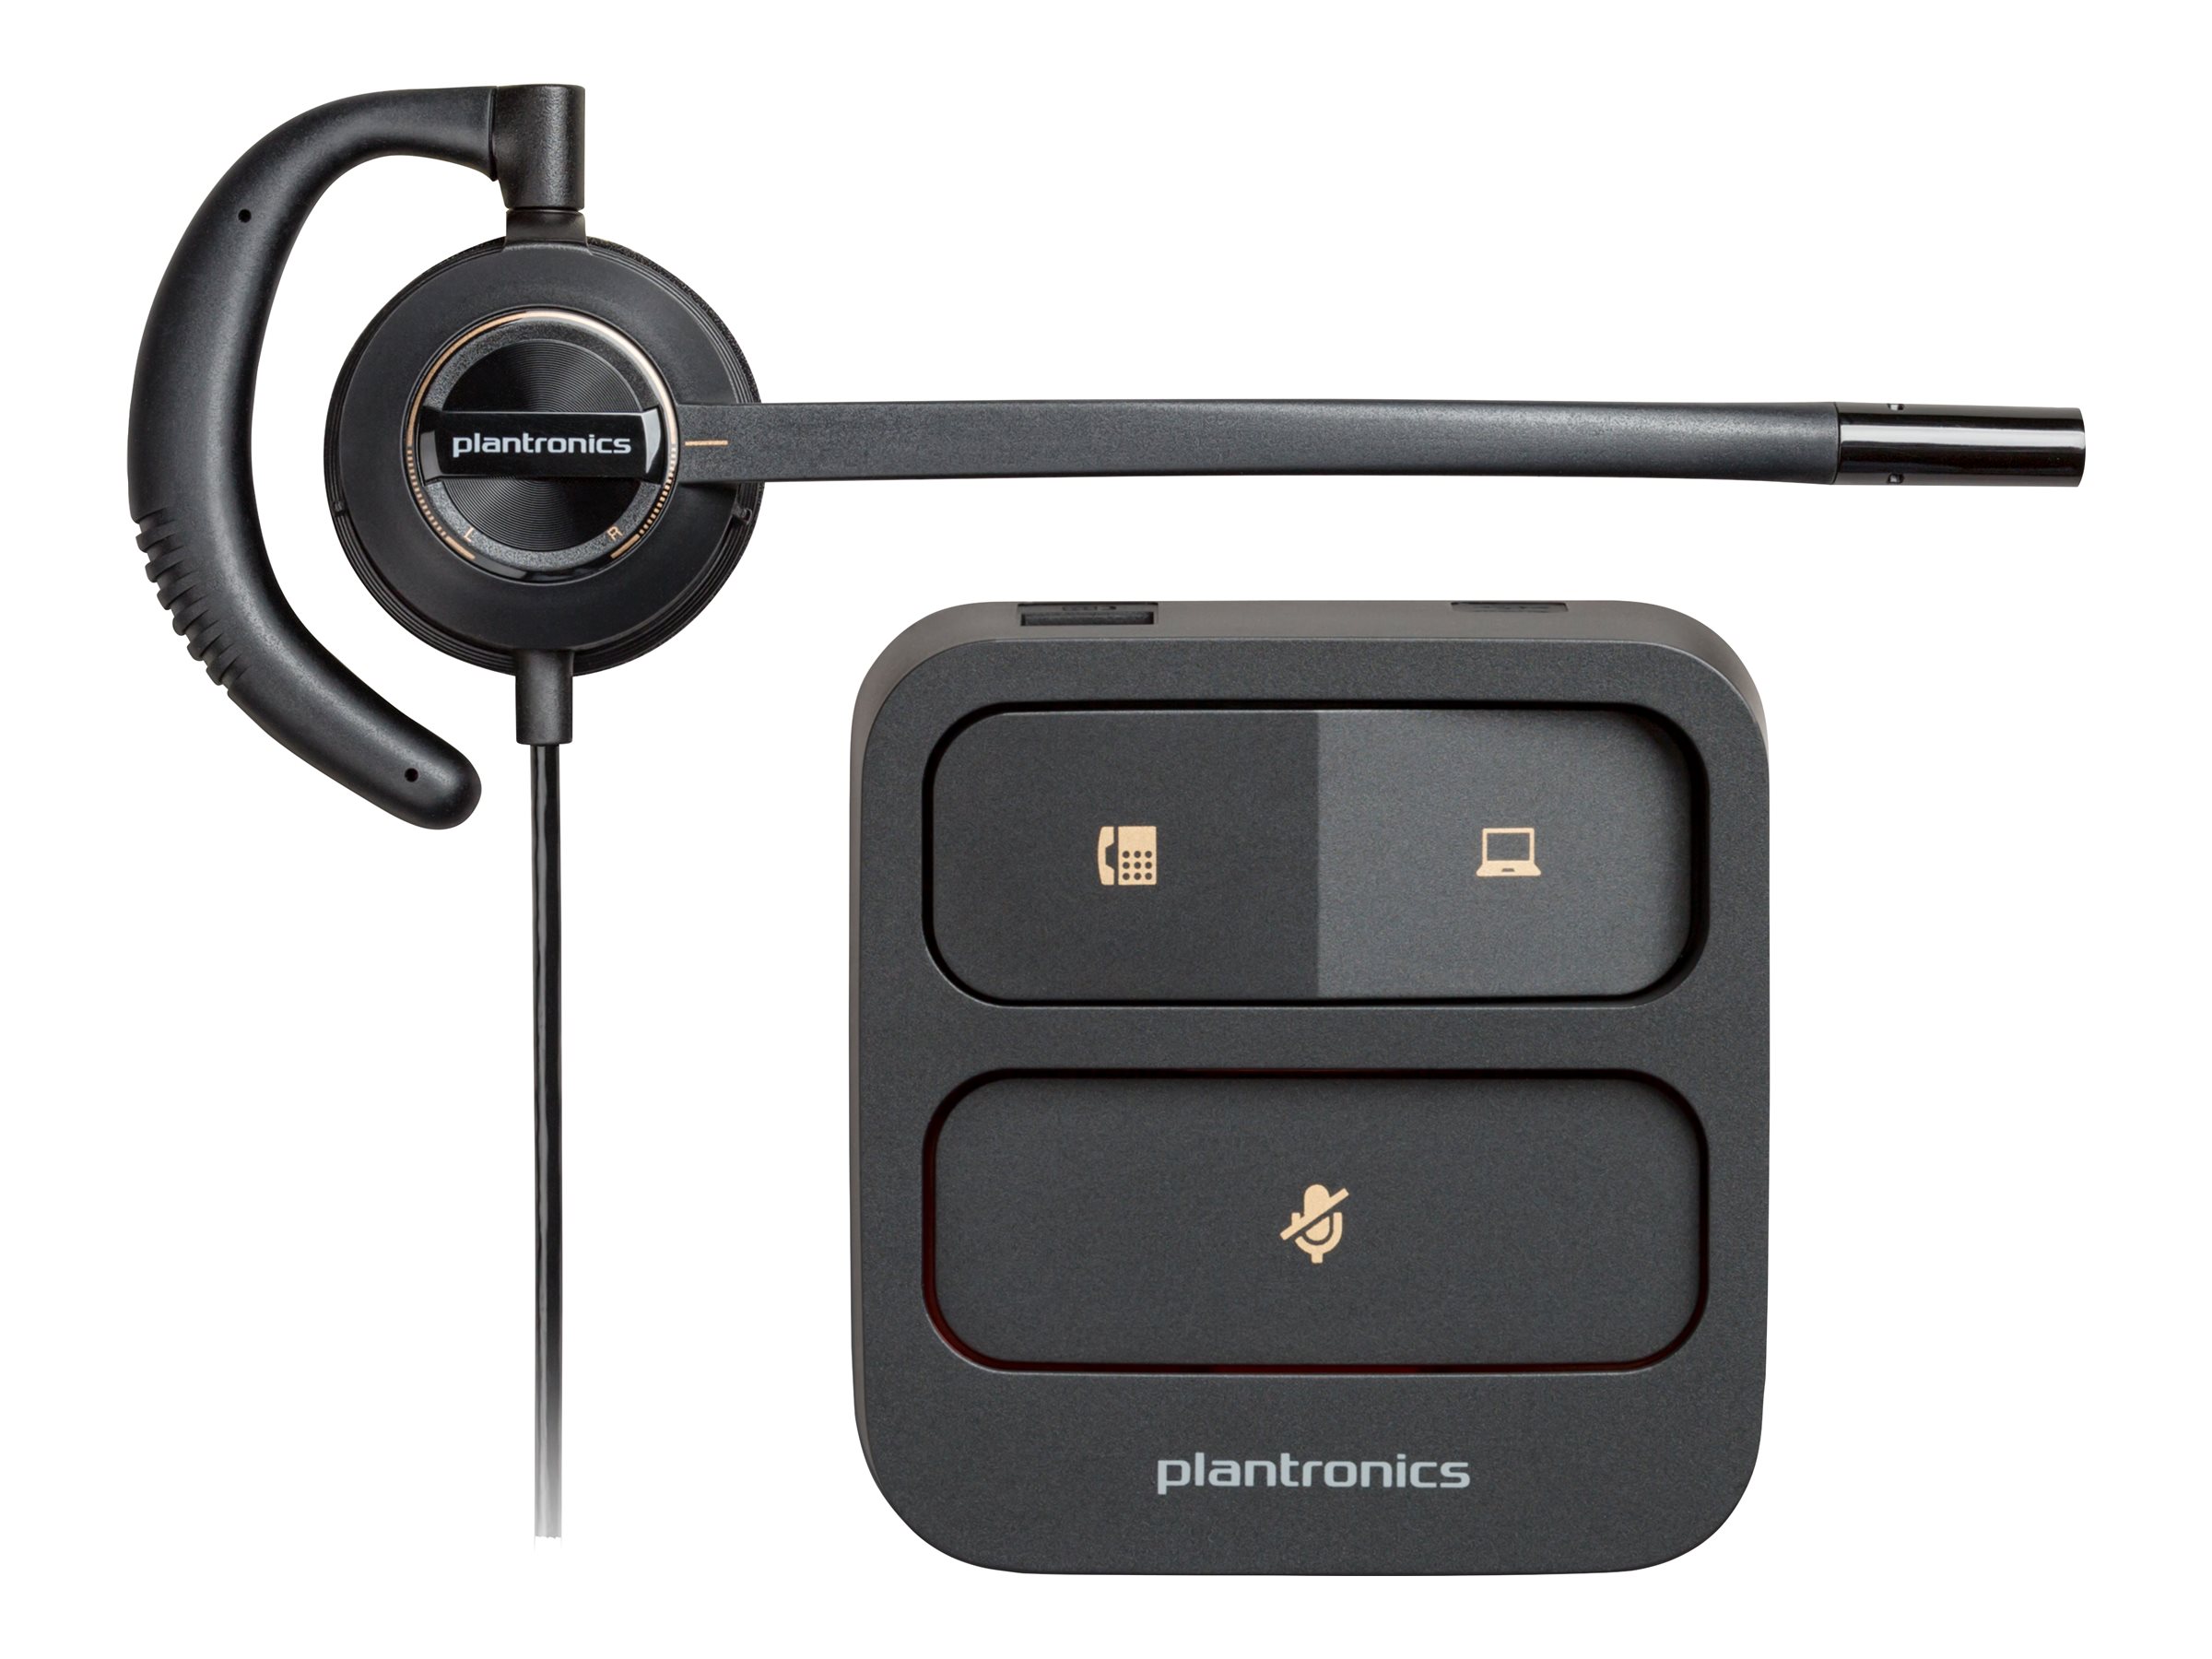 Poly EncorePro 530 - EncorePro 500 series - micro-casque - intra-auriculaire - filaire - Quick Disconnect - noir - Certifié pour Skype for Business, certifié UC - 783P3AA#ABB - Écouteurs